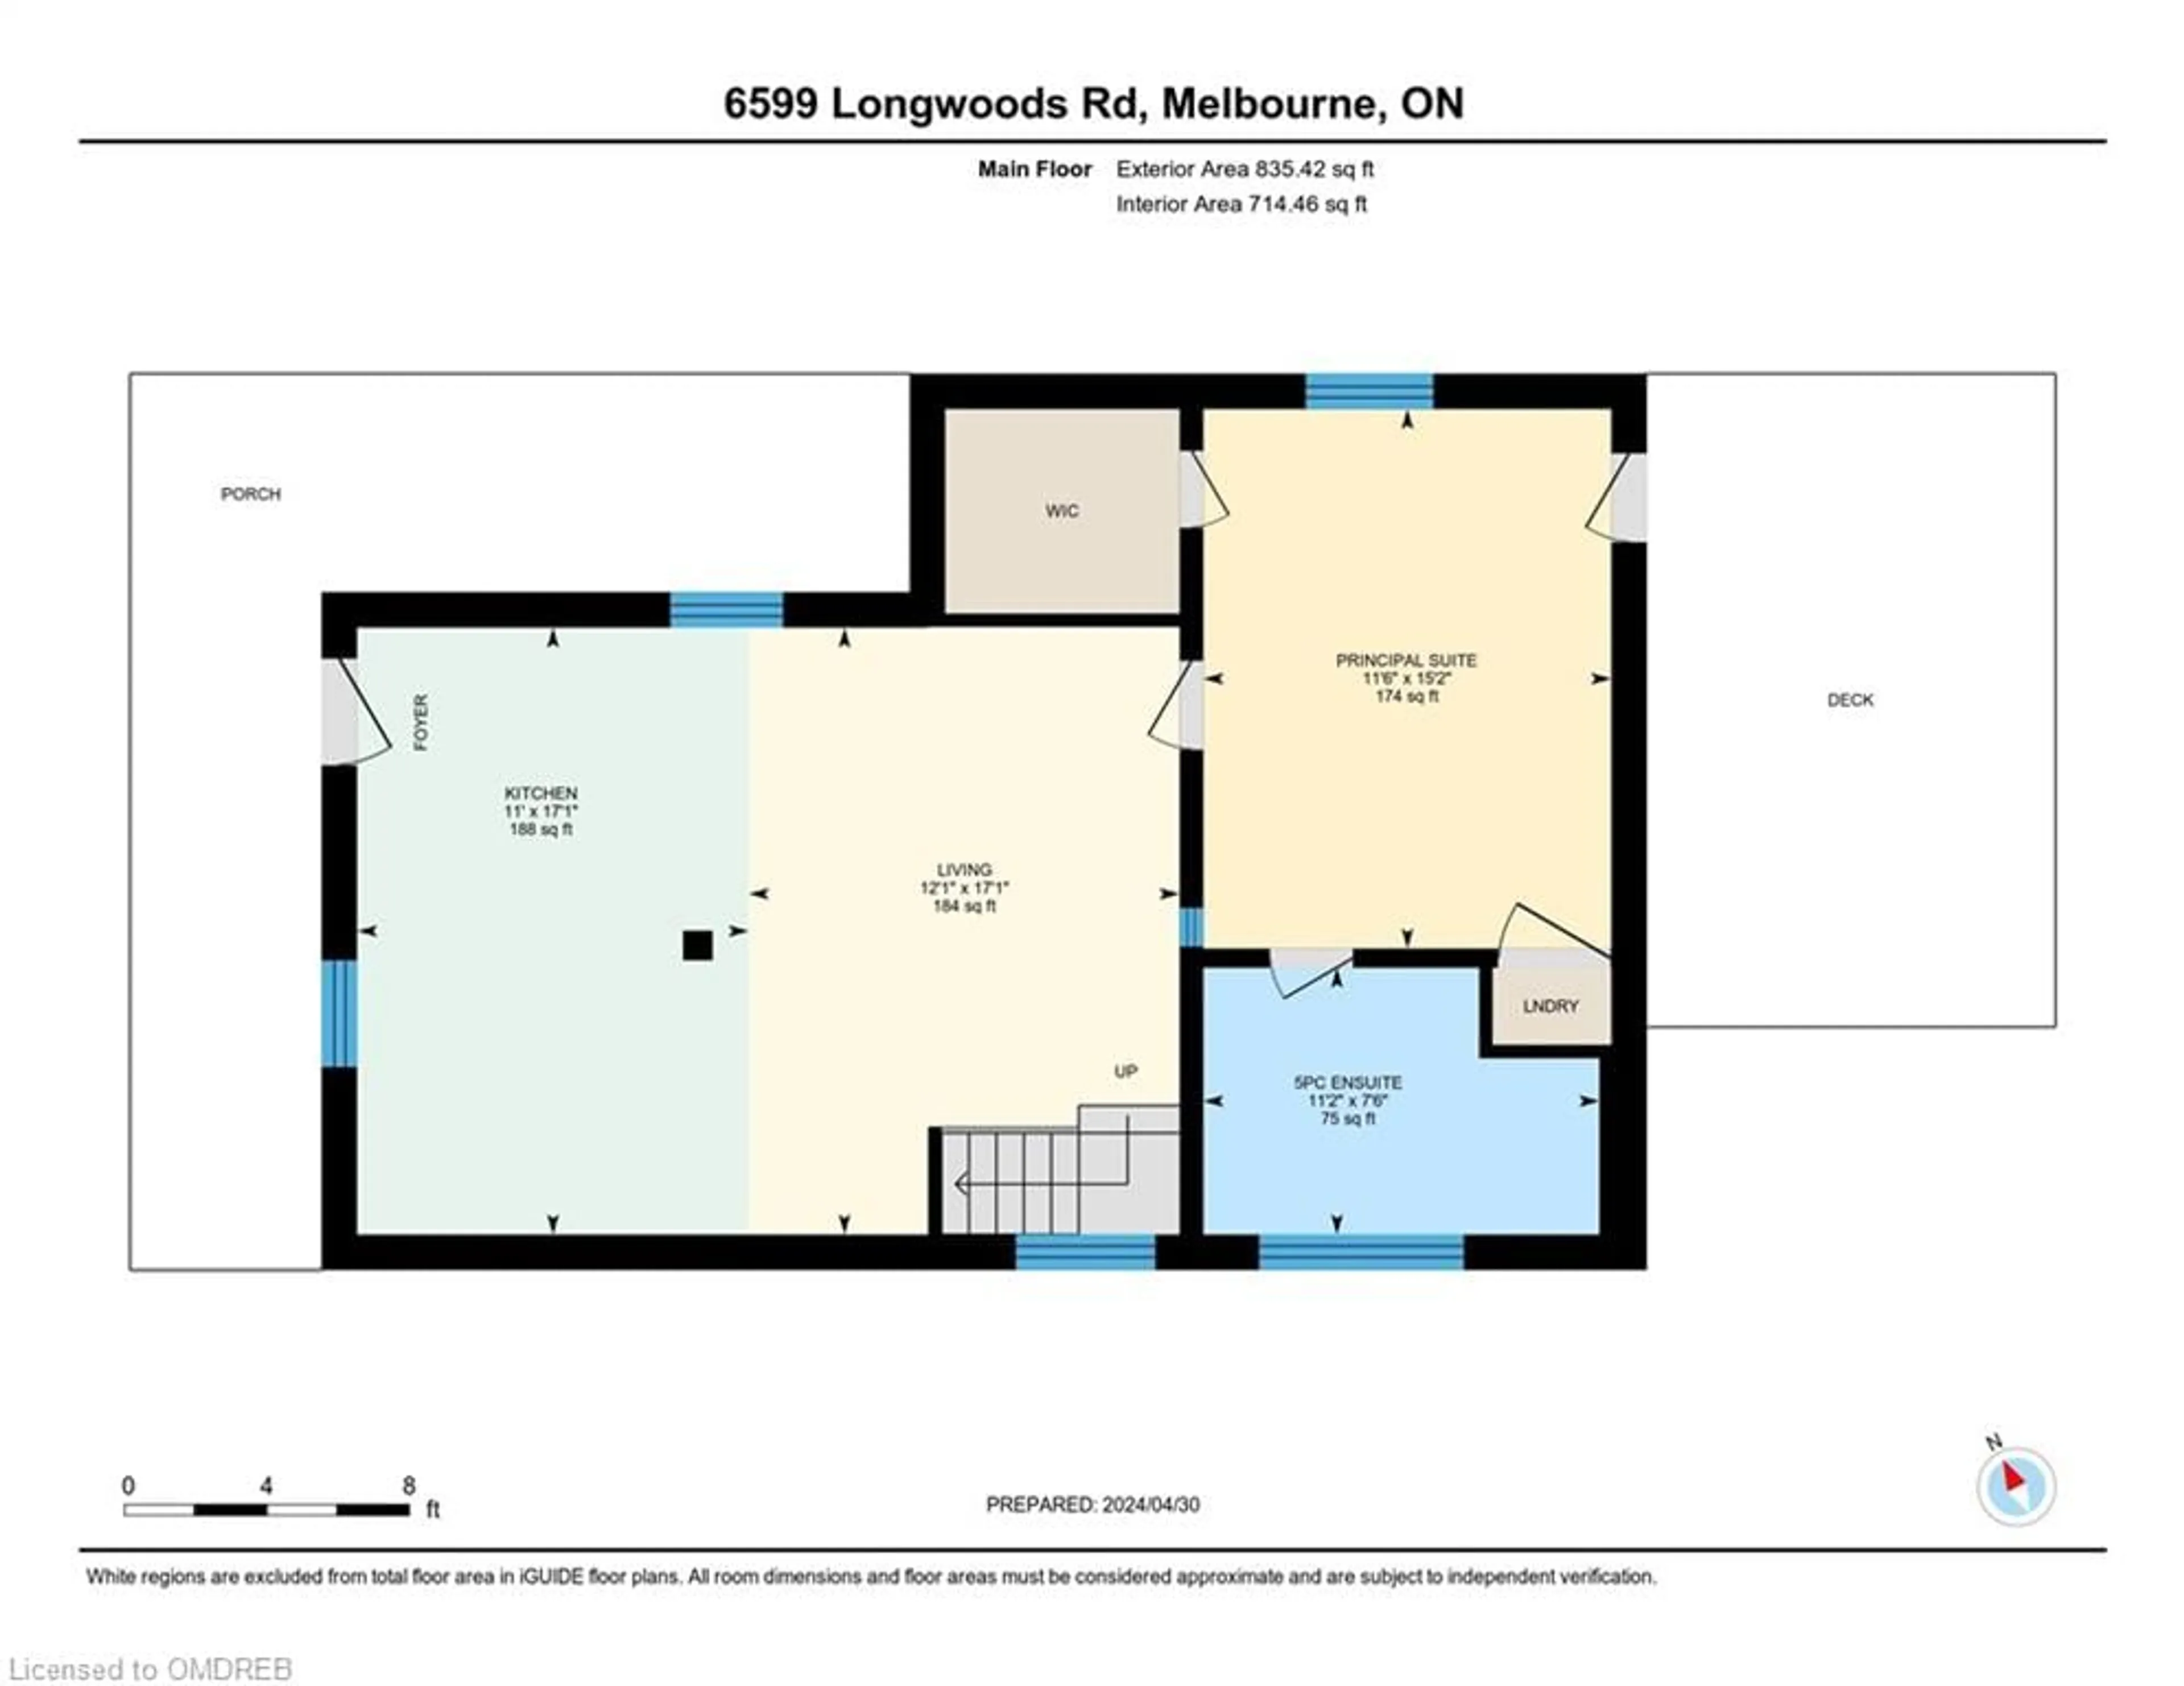 Floor plan for 6599 Longwoods Rd, Melbourne Ontario N0L 1T0